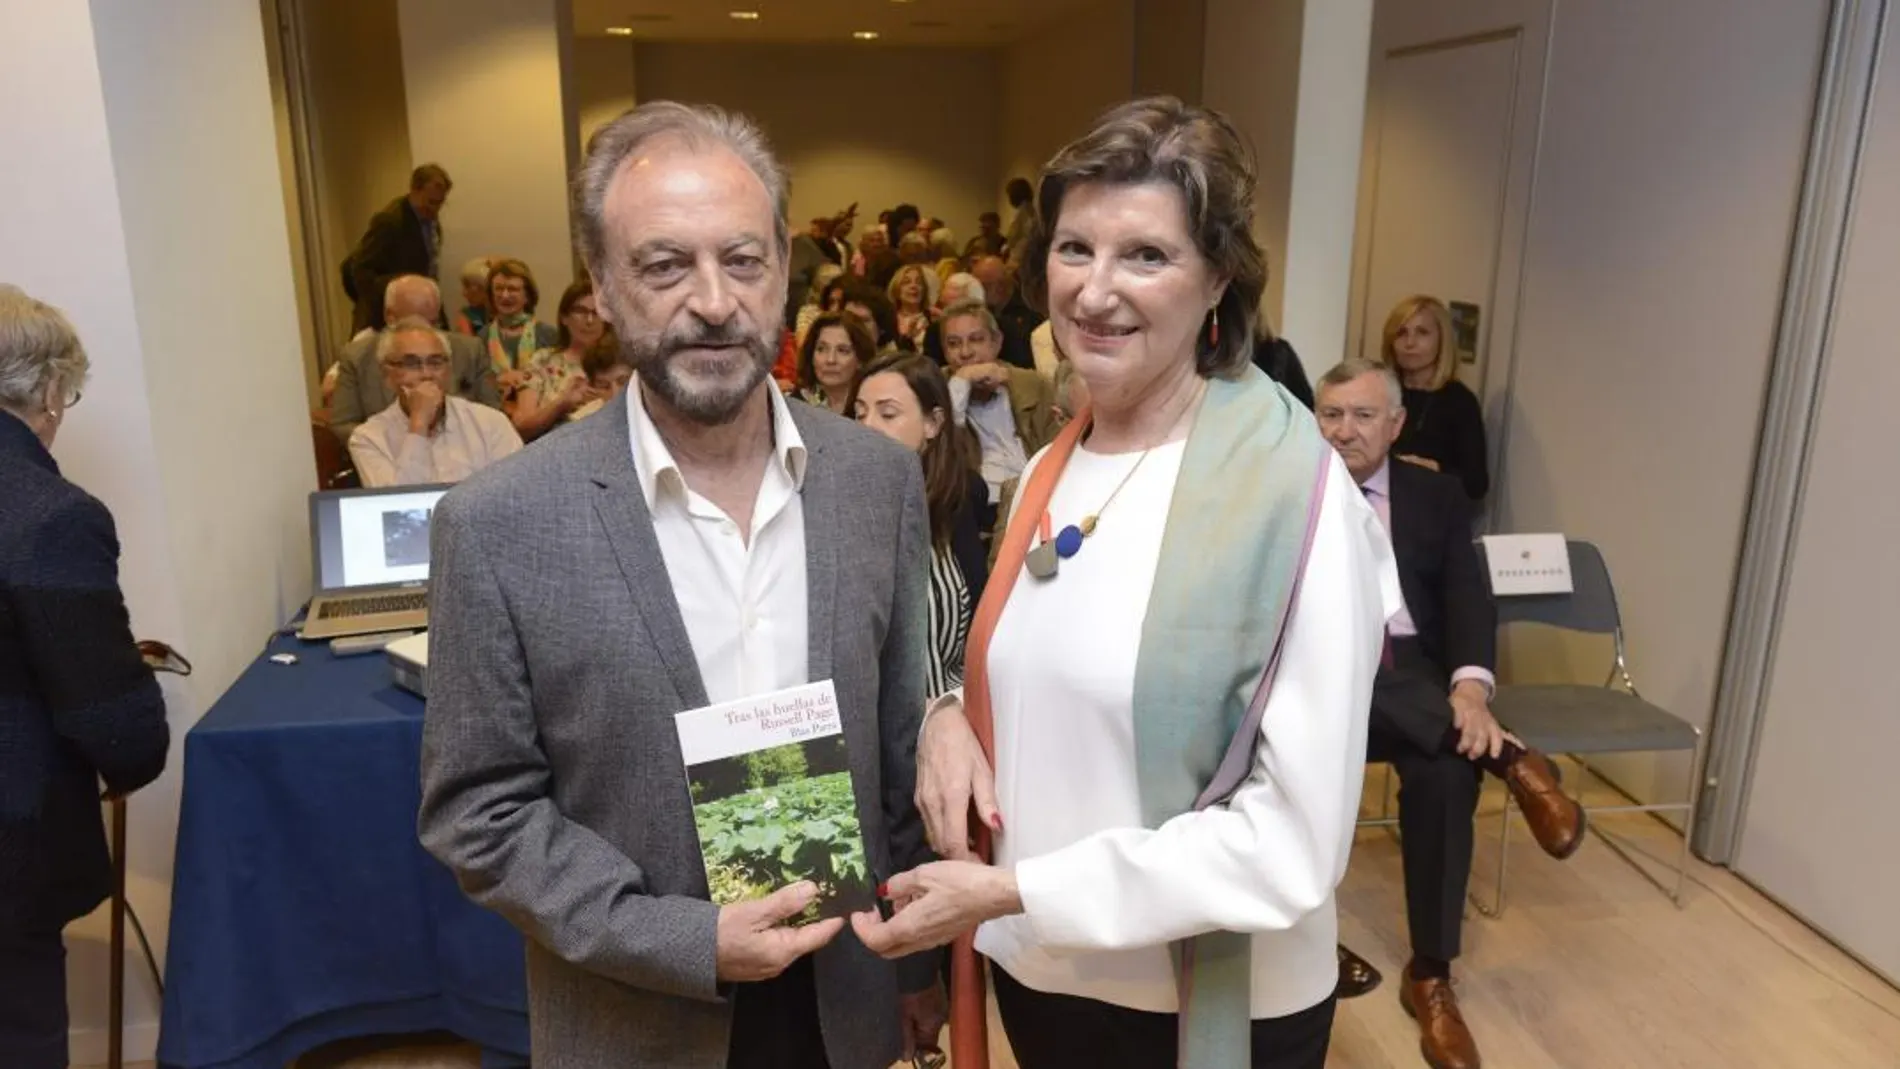 La Fundación Cañada Blanch albergó la presentación del último libro de Blas Parra ayer por la tarde